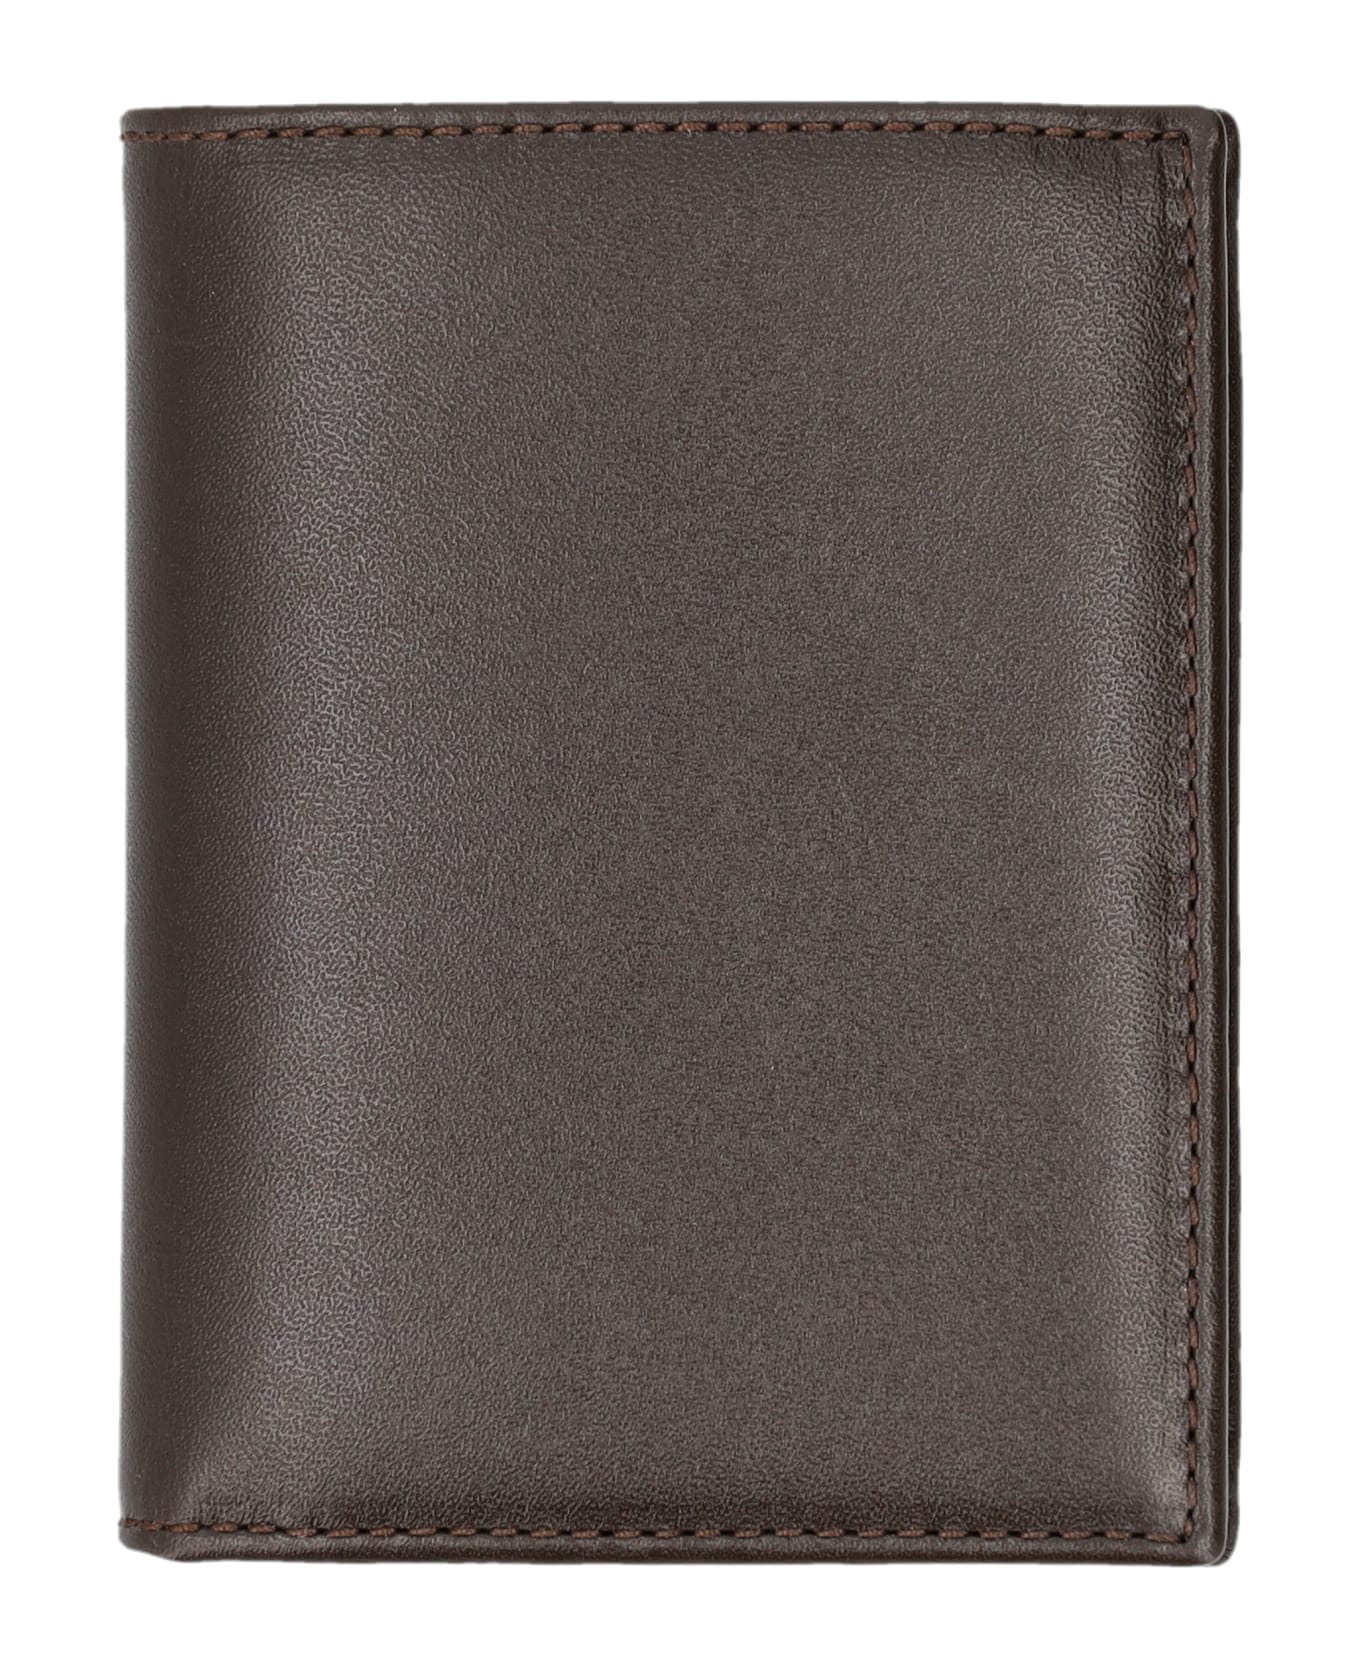 Comme des Garçons Wallet Classic Cardholder - BROWN 財布